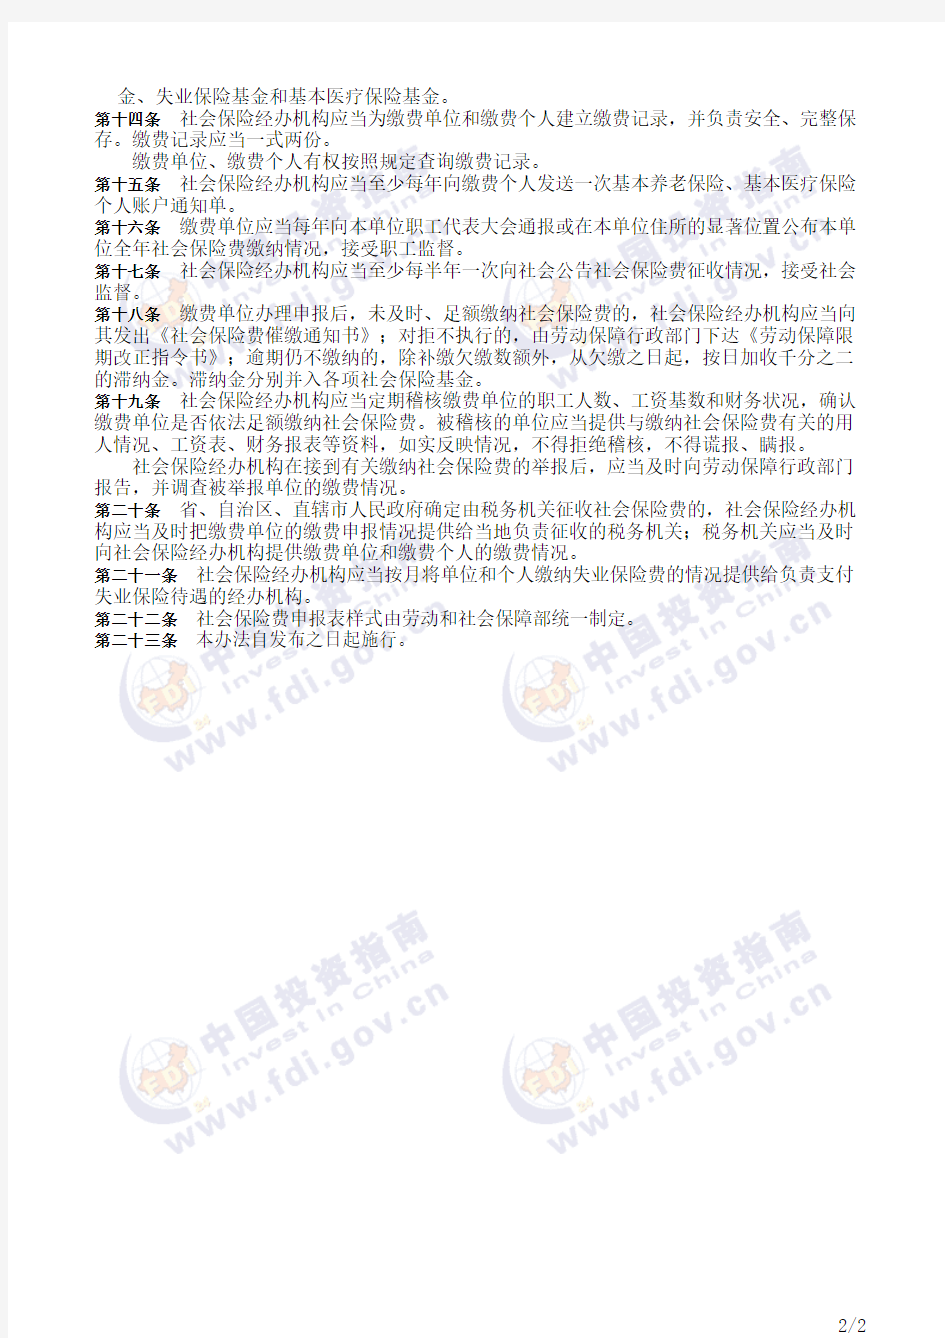 中华人民共和国劳动和社会保障部令